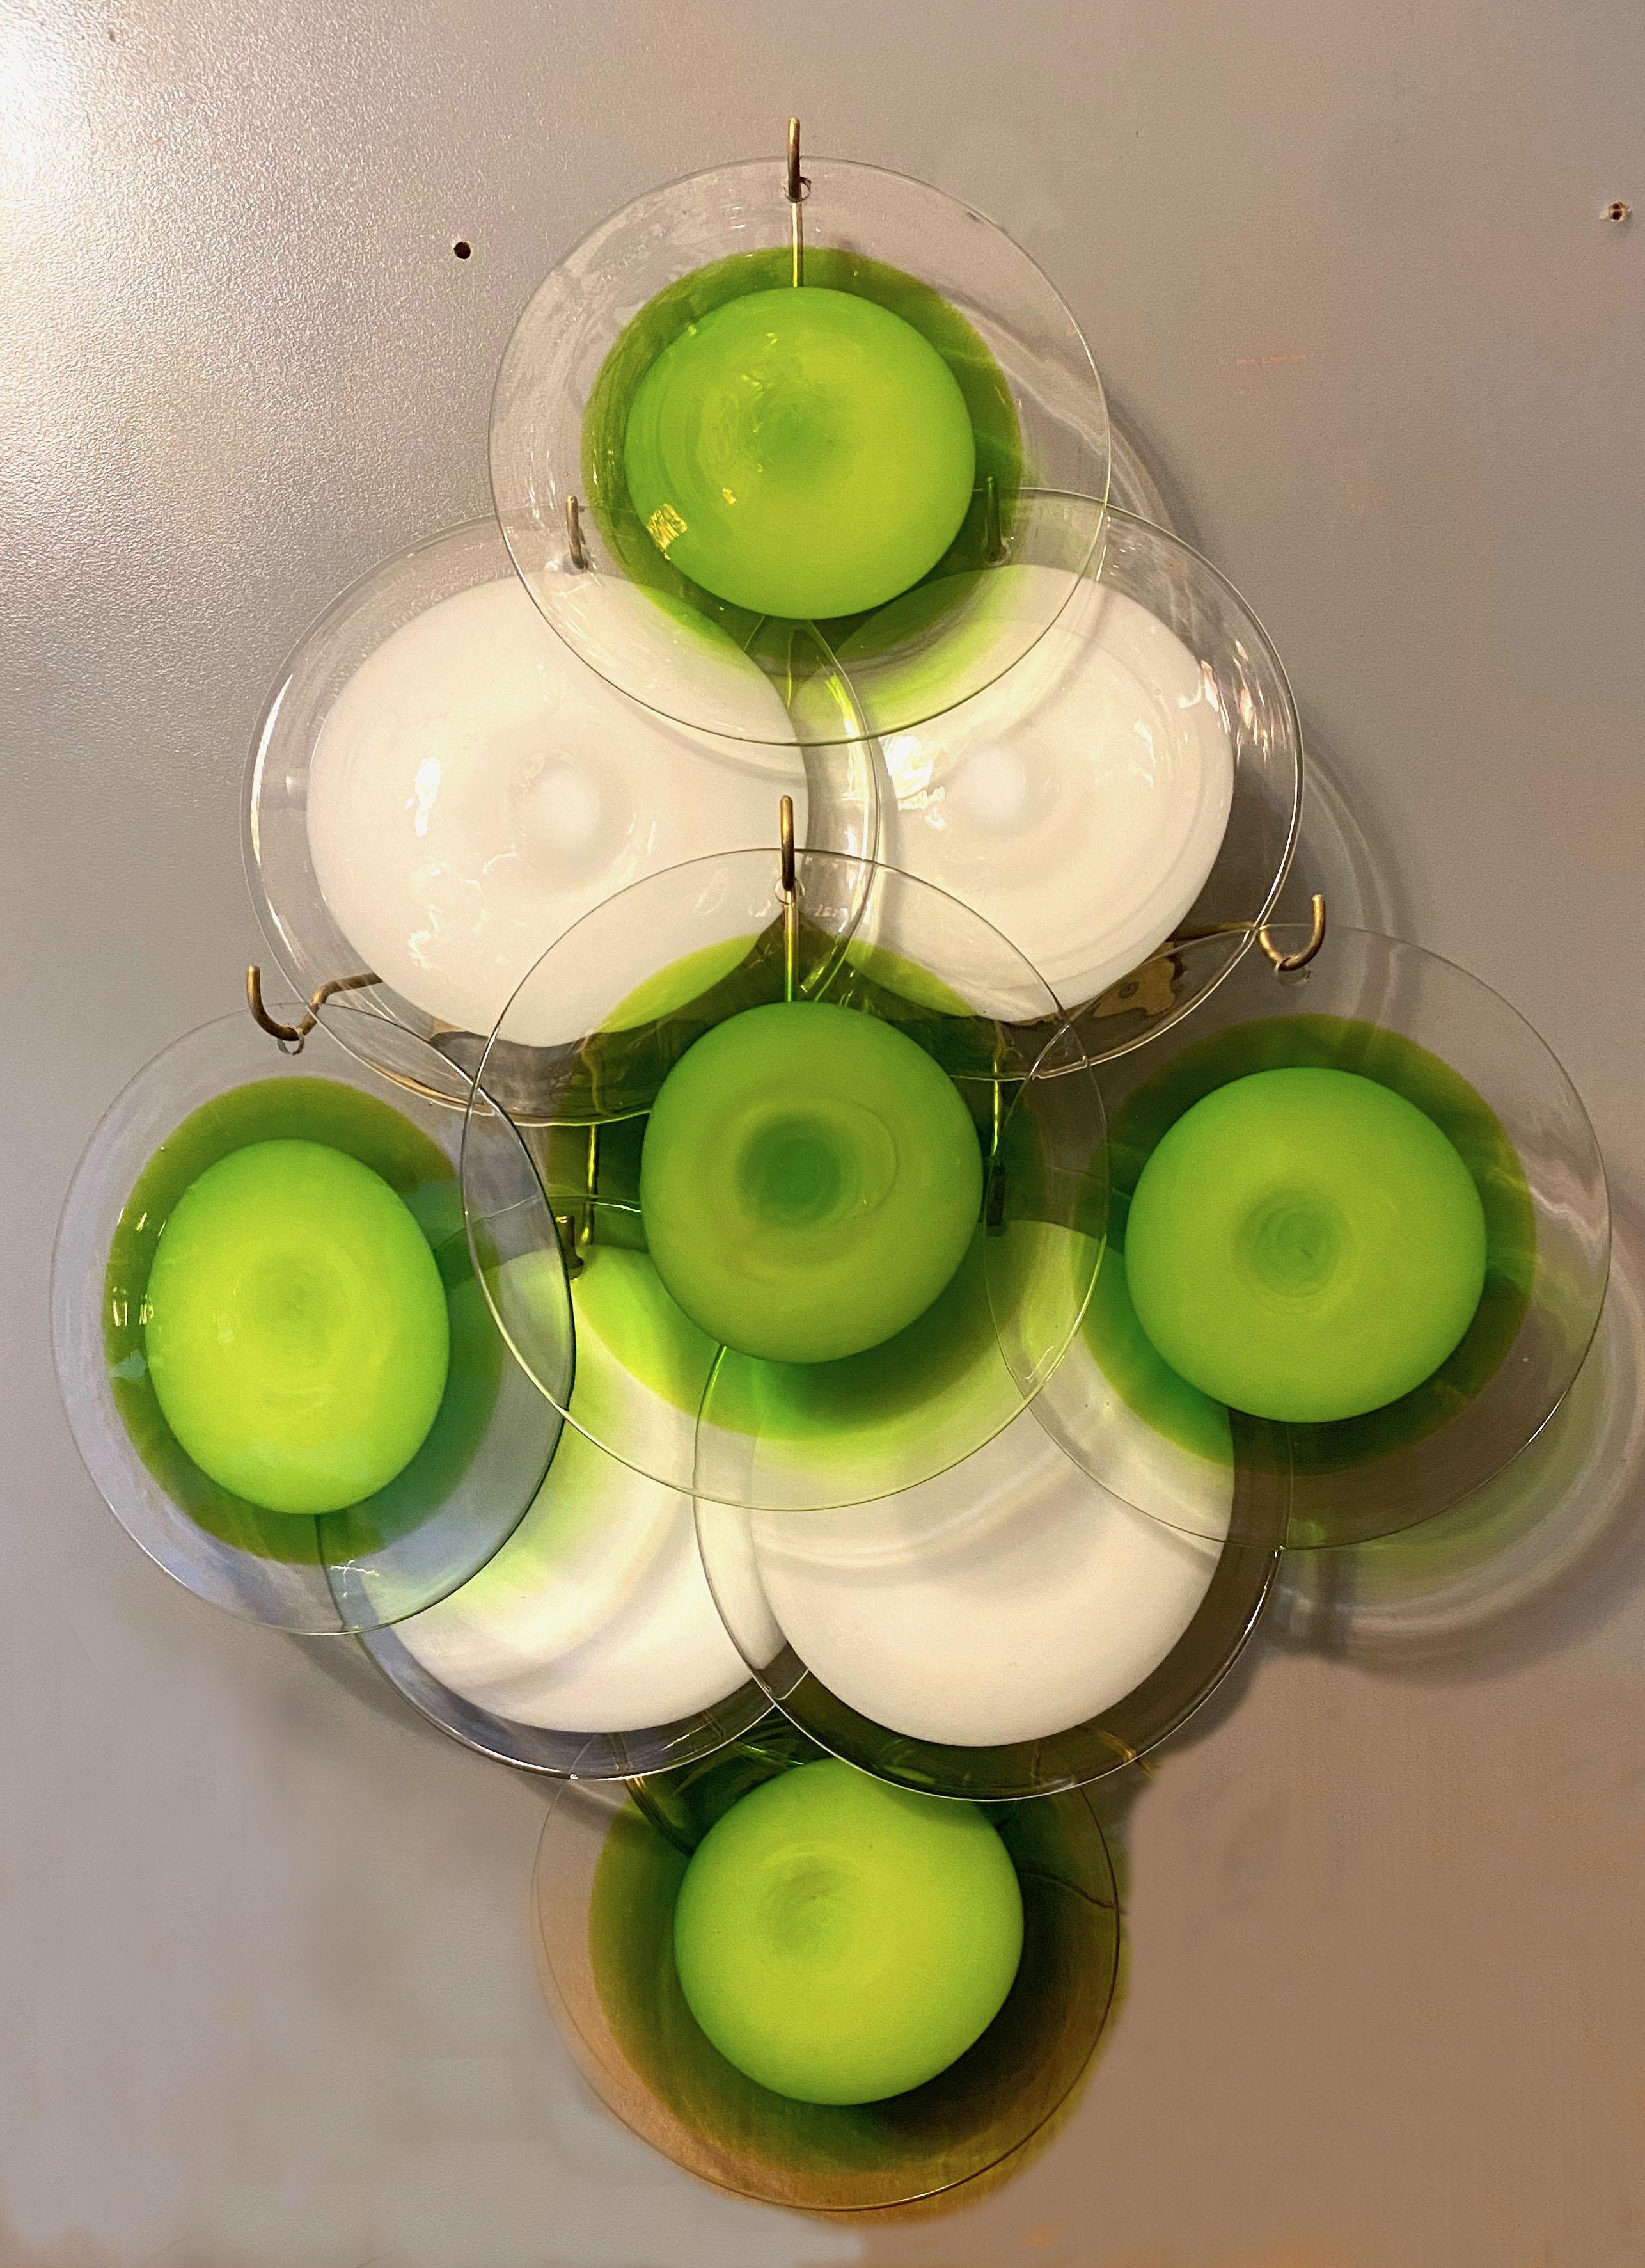 Étonnante paire d'appliques avec neuf disques verts et blancs de Vistosi, Murano.
Disponibles en deux paires ainsi que le lustre assorti. Référence de l'article LU98593828532
Deux ampoules E14.
Nous pouvons refaire l'installation électrique selon